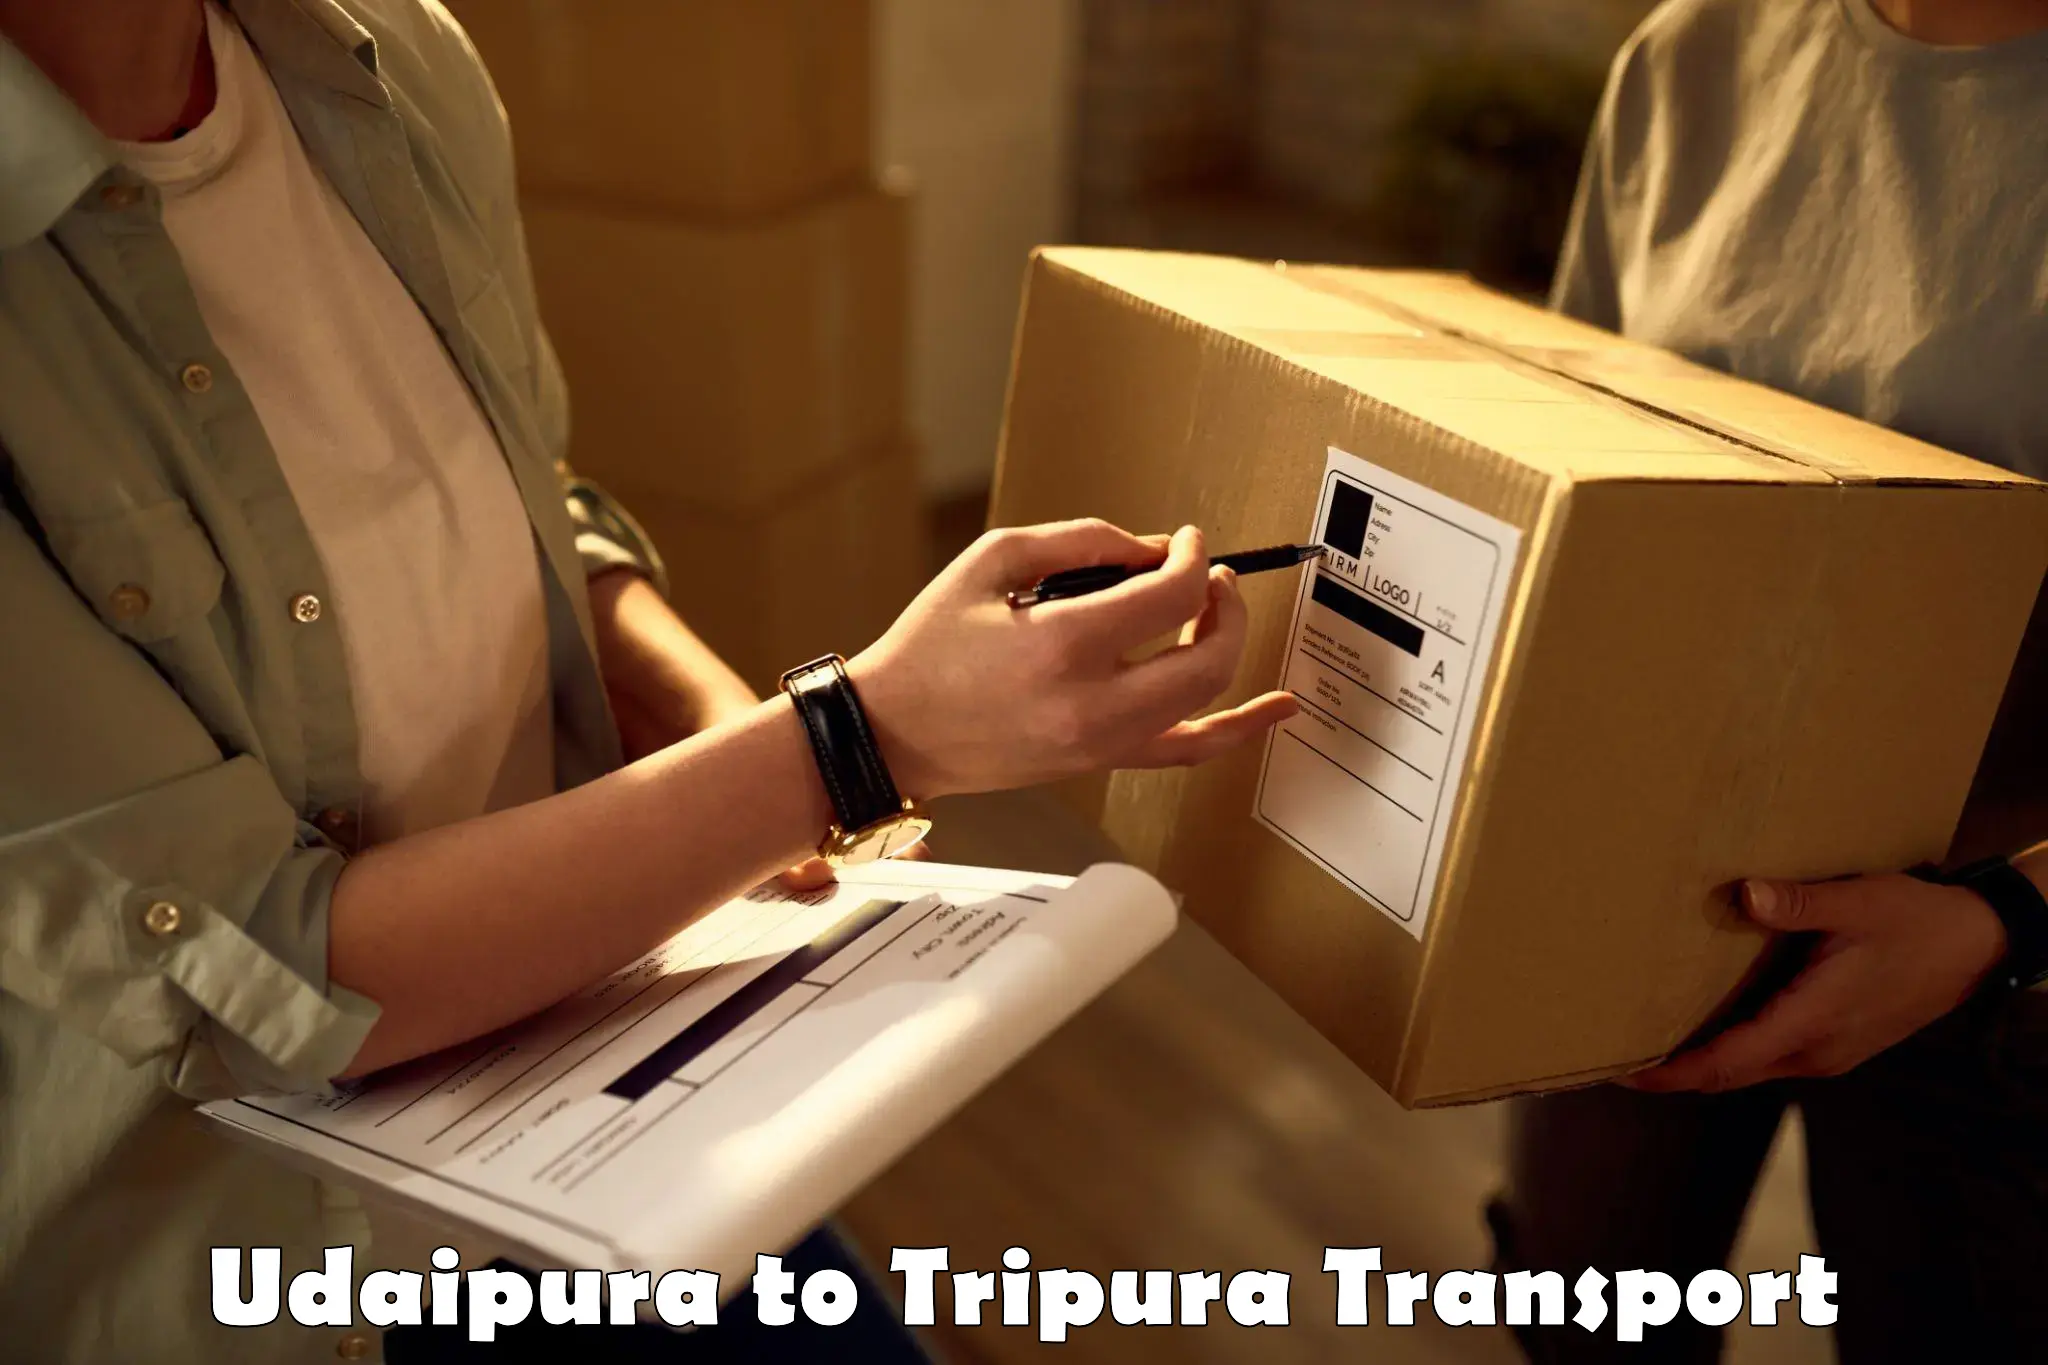 Delivery service Udaipura to Dharmanagar